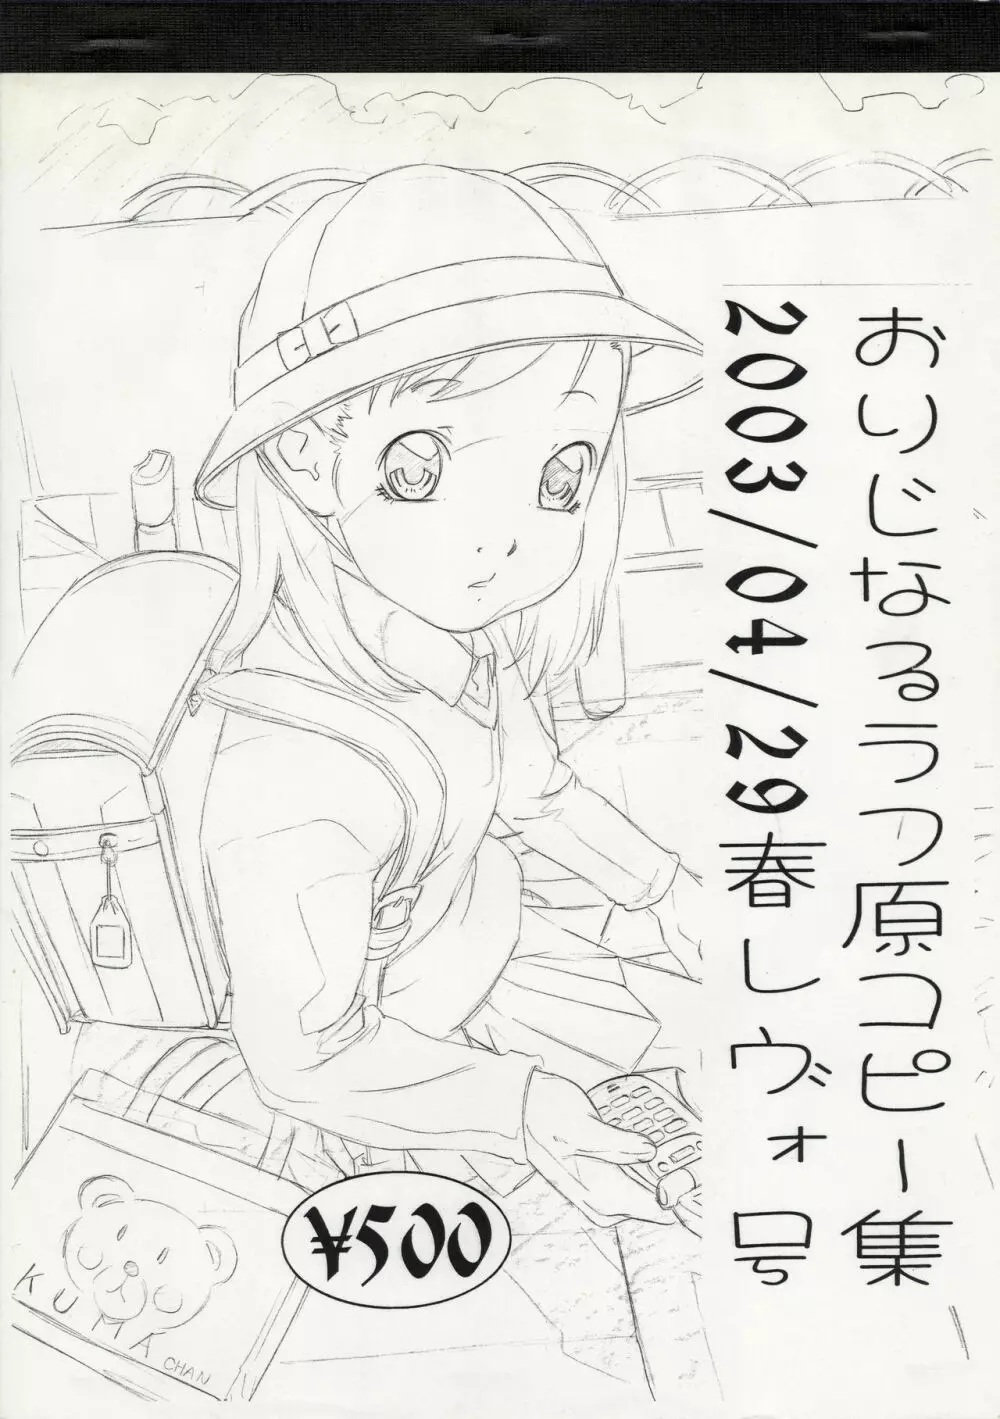 おりじなるらふ原コピー集 2003/04/29 春レヴォ号